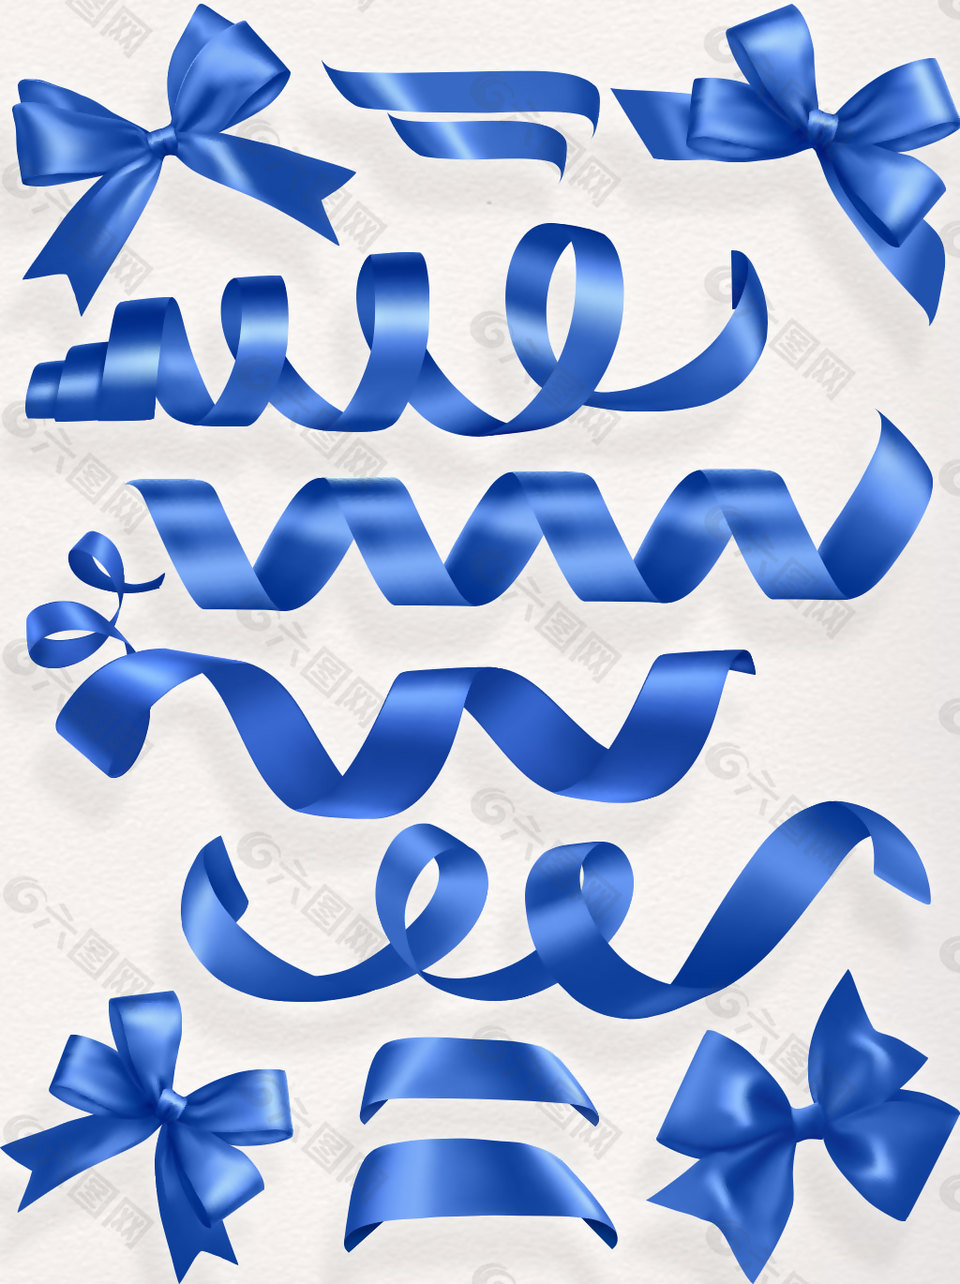 蓝色飘带素材矢量装饰元素蝴蝶结丝带集合